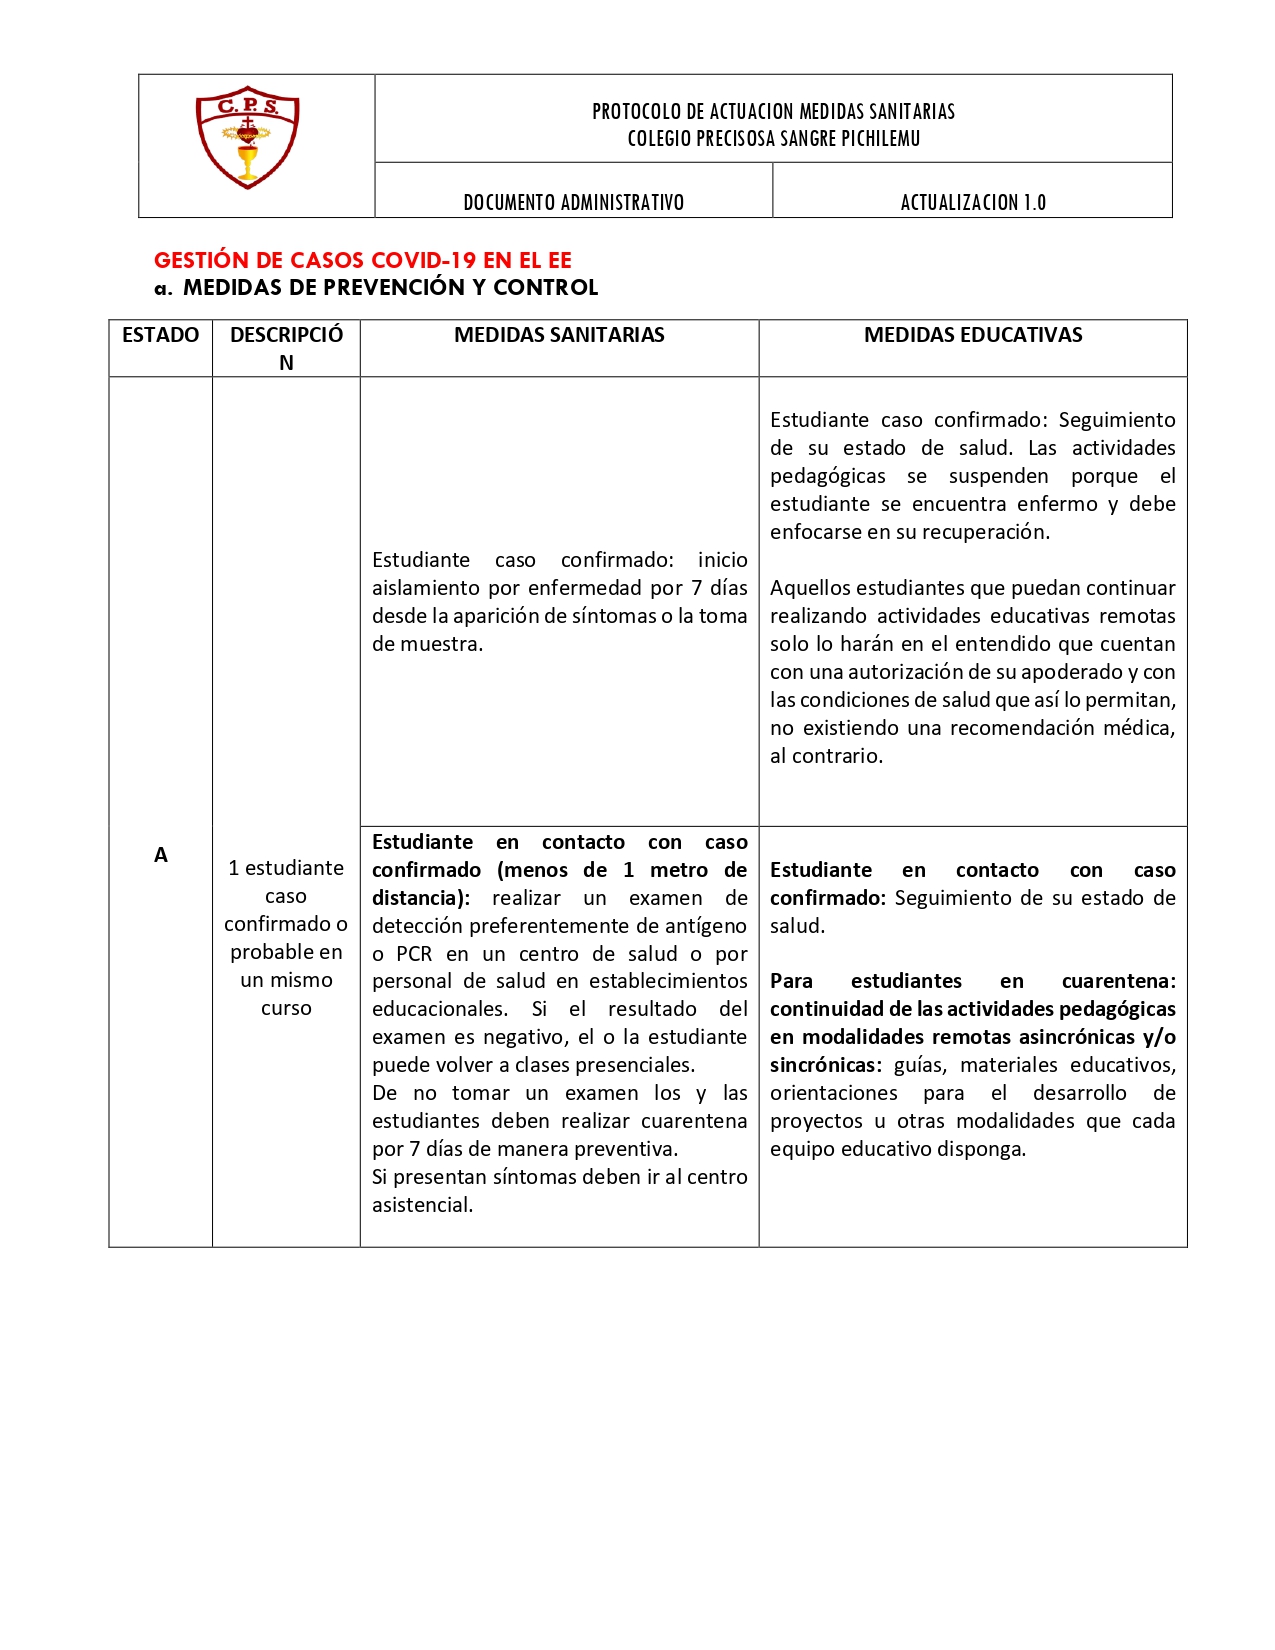 PROTOCOLO DE ACTUACION MEDIDAS SANITARIAS 2022_page-0010